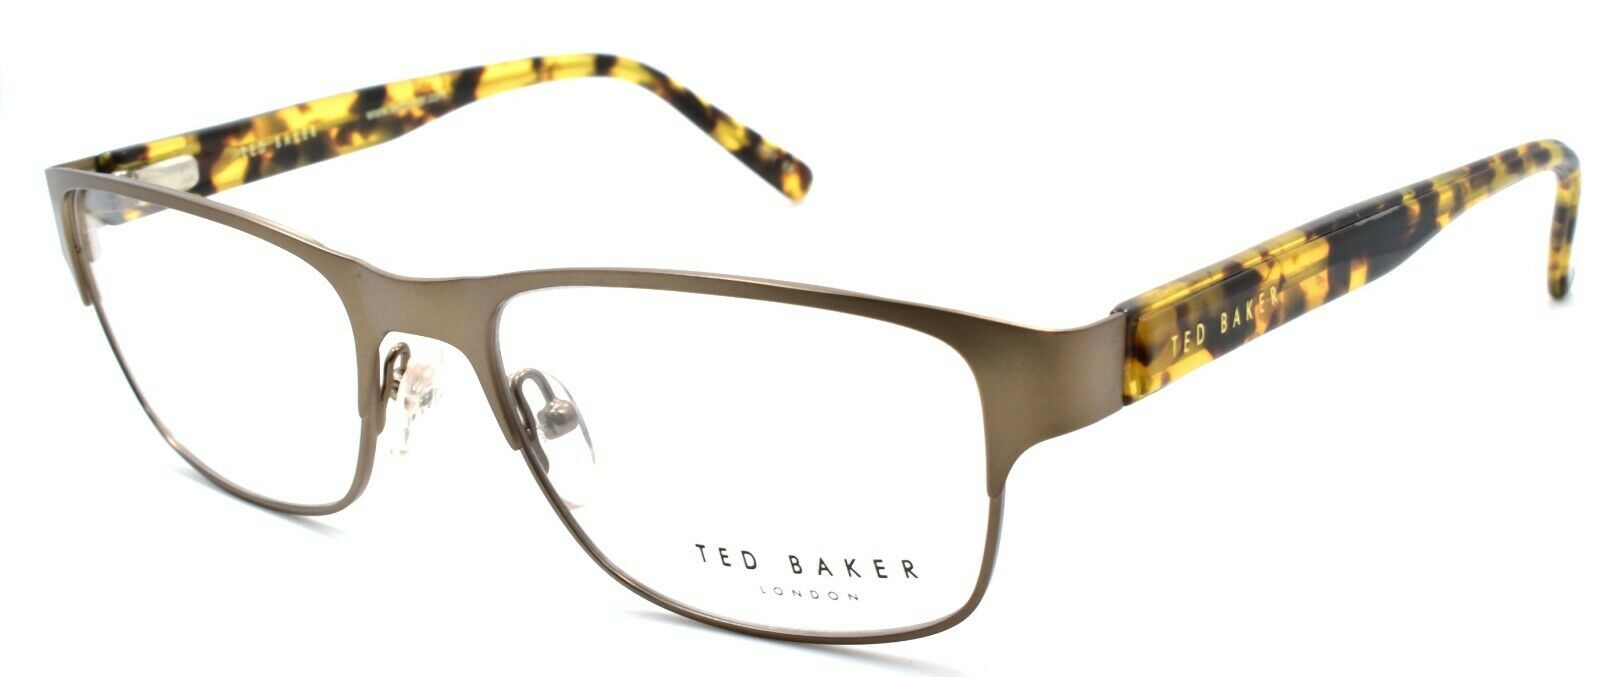 1-Ted Baker Atlantic 4208 440 Eyeglasses Frames 52-17-140 Tan / Tortoise-4894327024599-IKSpecs